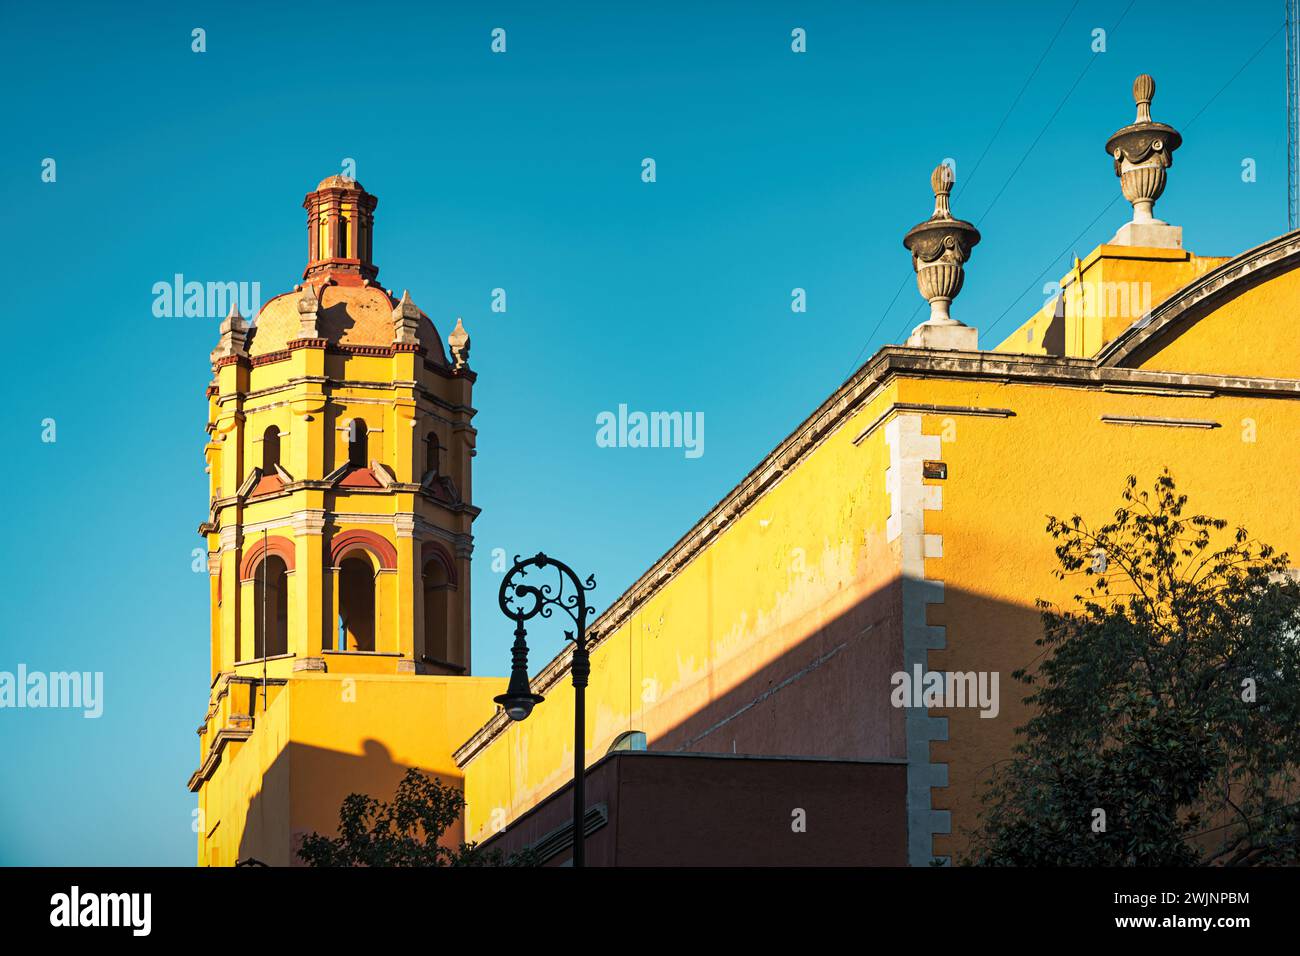 San Pedro y San Pablo College, Museo de las Constituciones in Old Town Mexico City, Mexico. Stock Photo